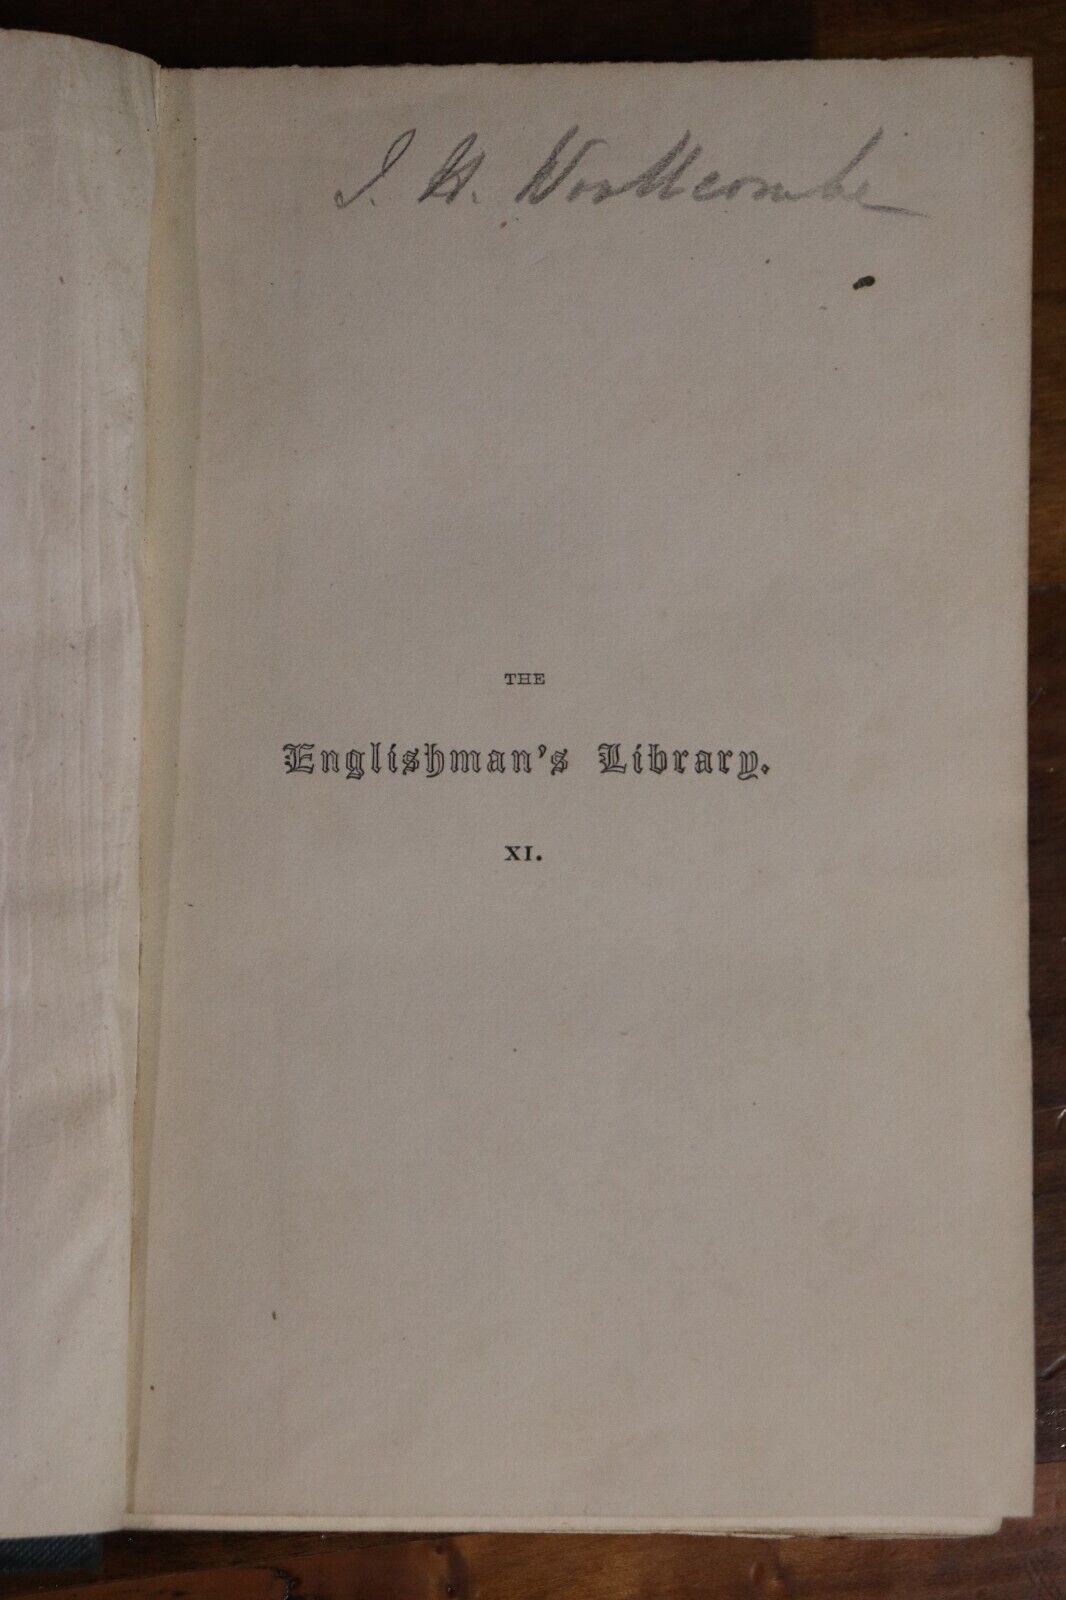 A Practical Discourse On Religious Assemblies - 1840 - Antique Religious Book